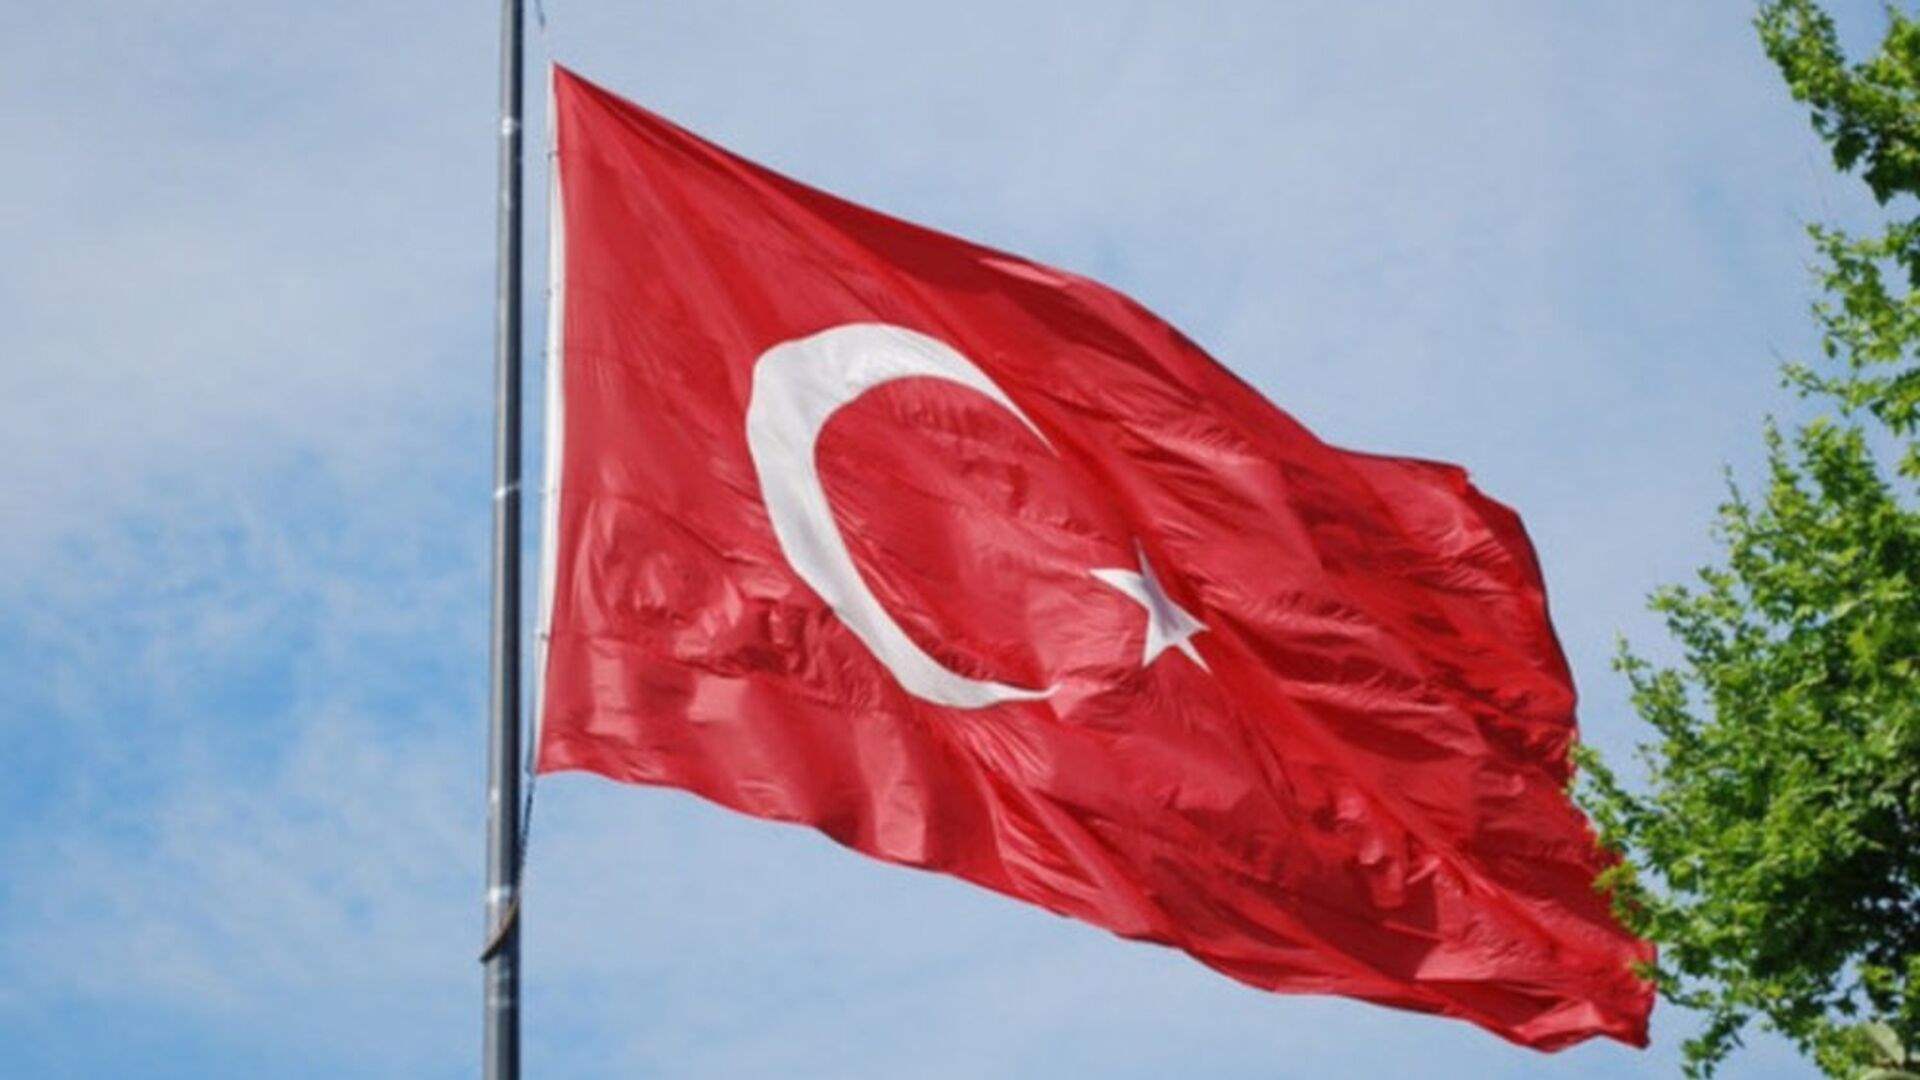 إدارة الهجرة بوزارة الداخلية التركية تنفى منع إصدار تصاريح إقامة جديدة للأجانب في اسطنبول 